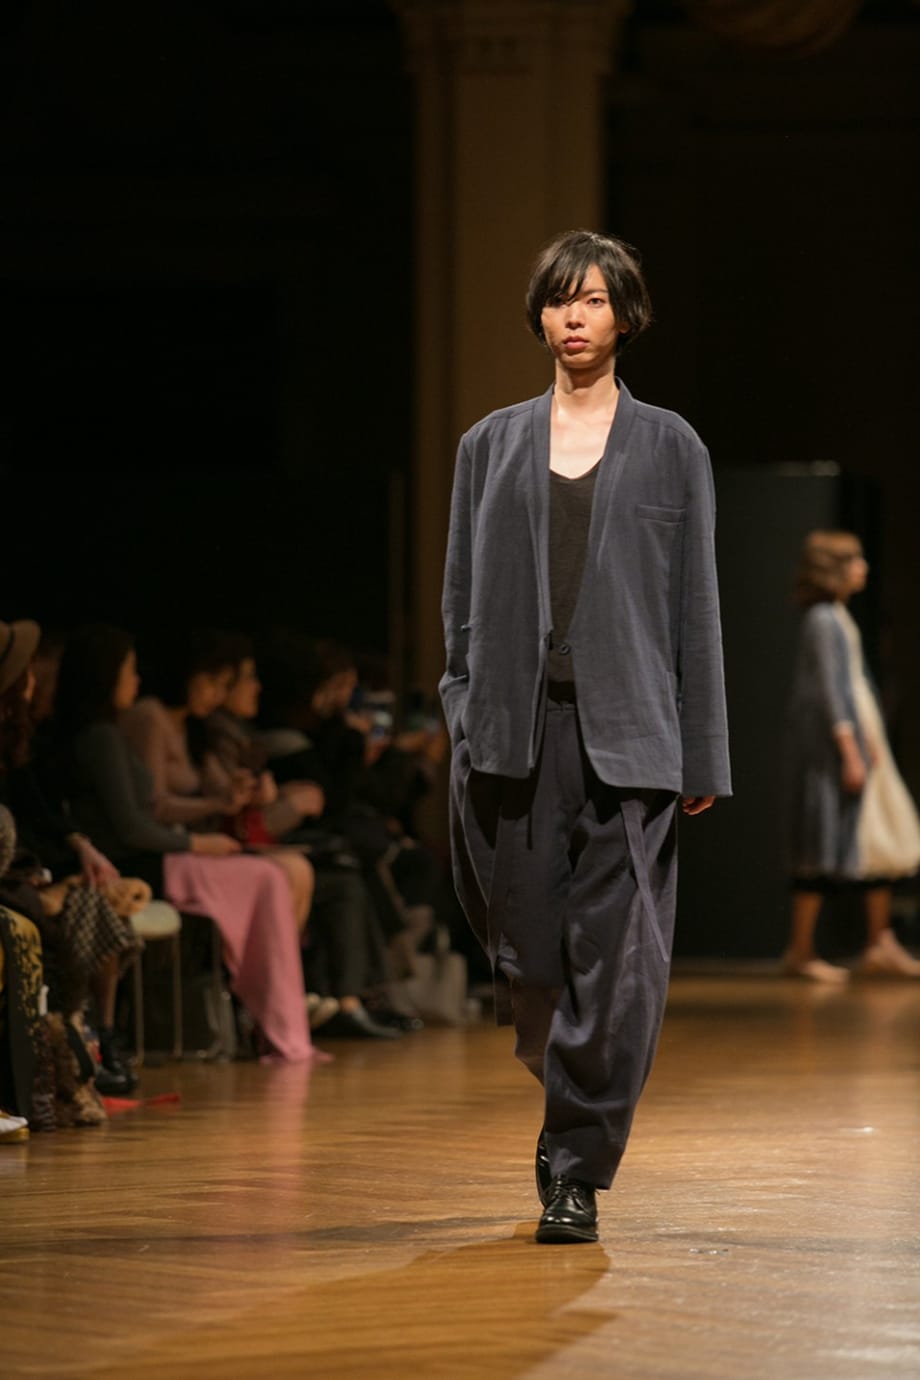 Mankenin fuzyon hanbok giydiği fotoğraf